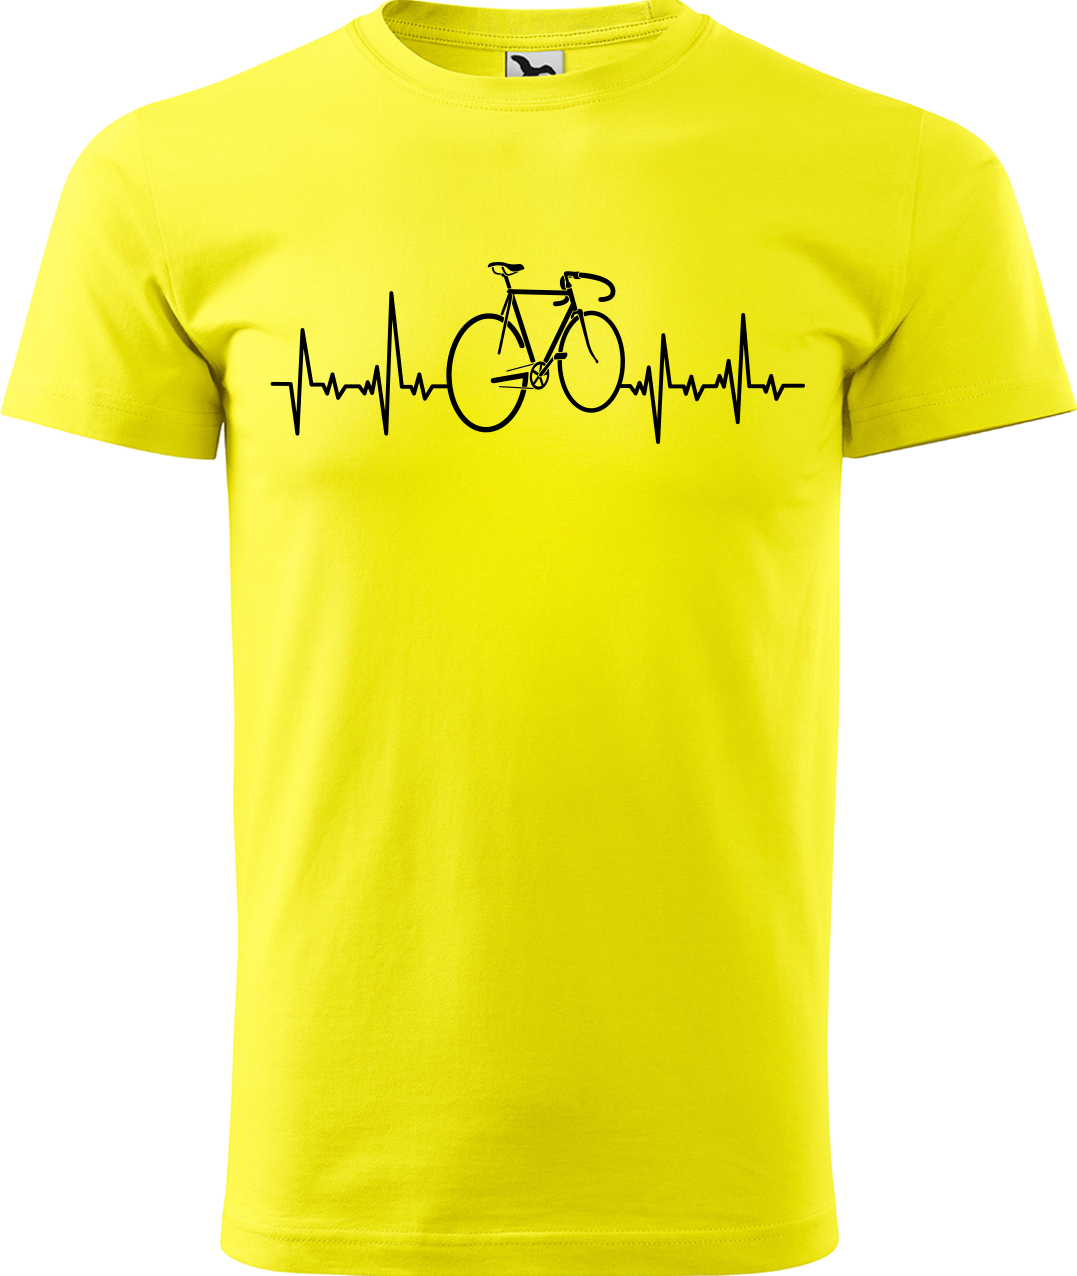 Pánské tričko s kolem - Cyklistův kardiogram Velikost: L, Barva: Žlutá (04)